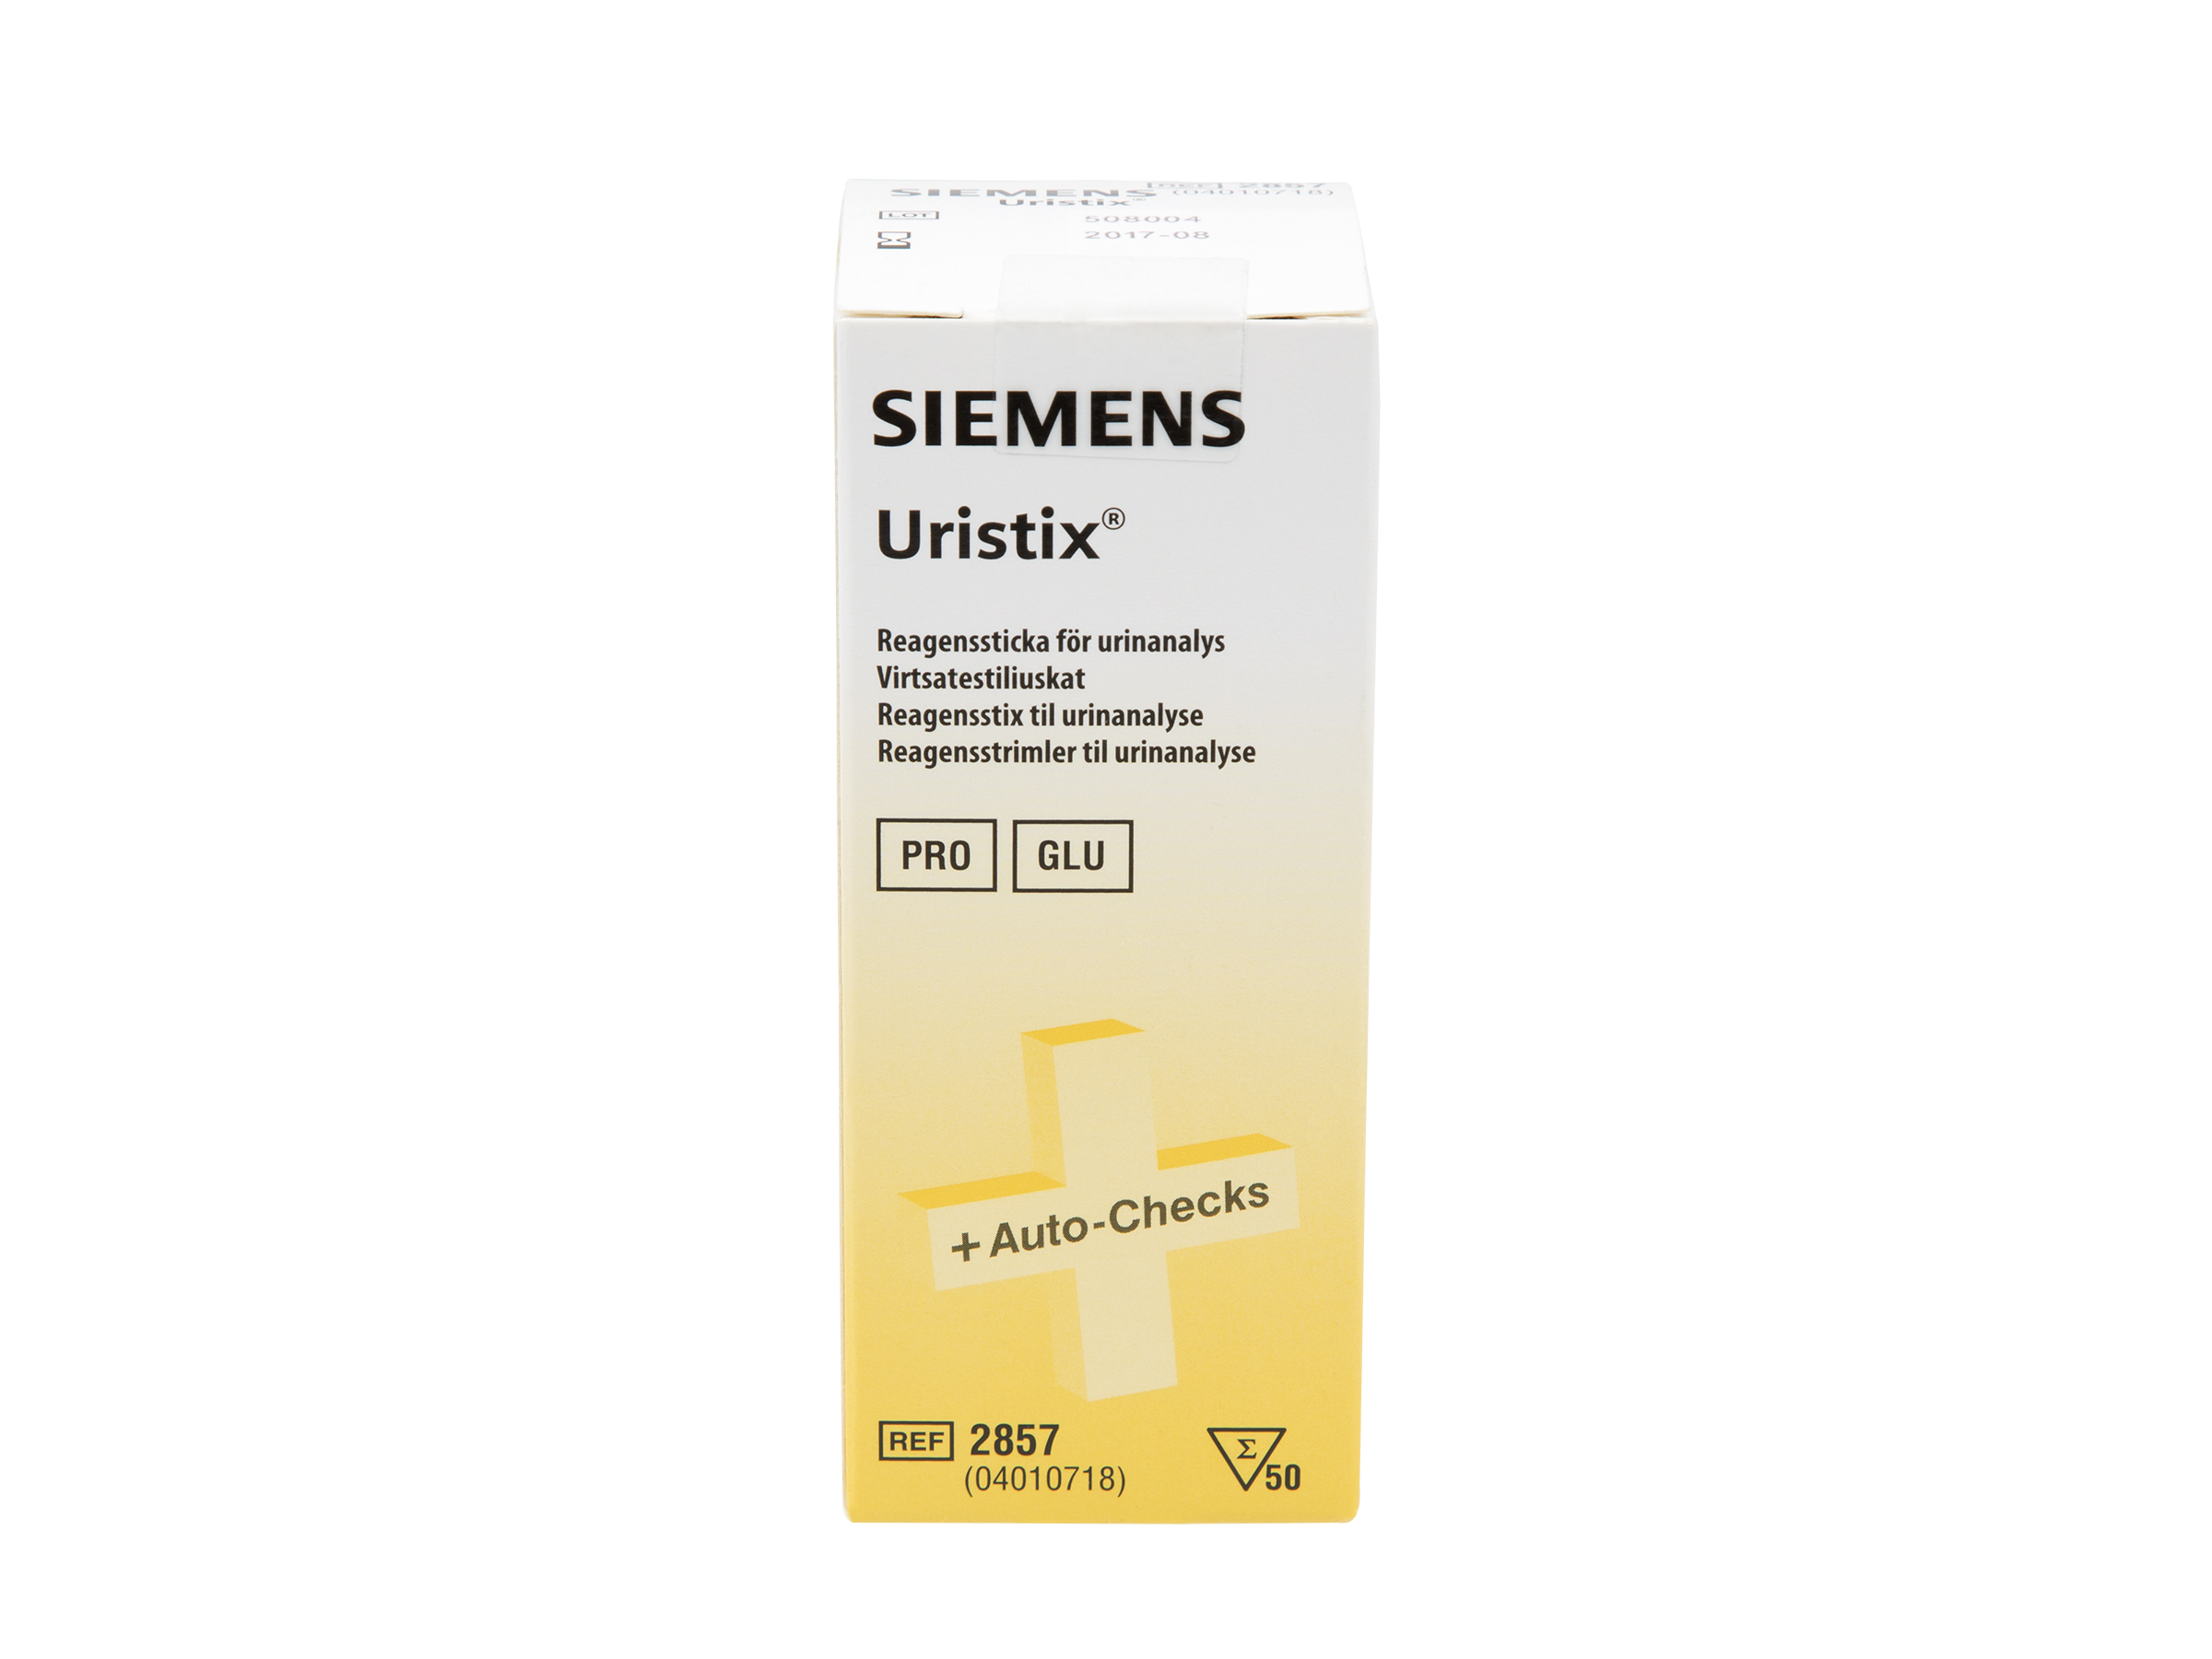 Siemens Uristix 2857, 50 stk